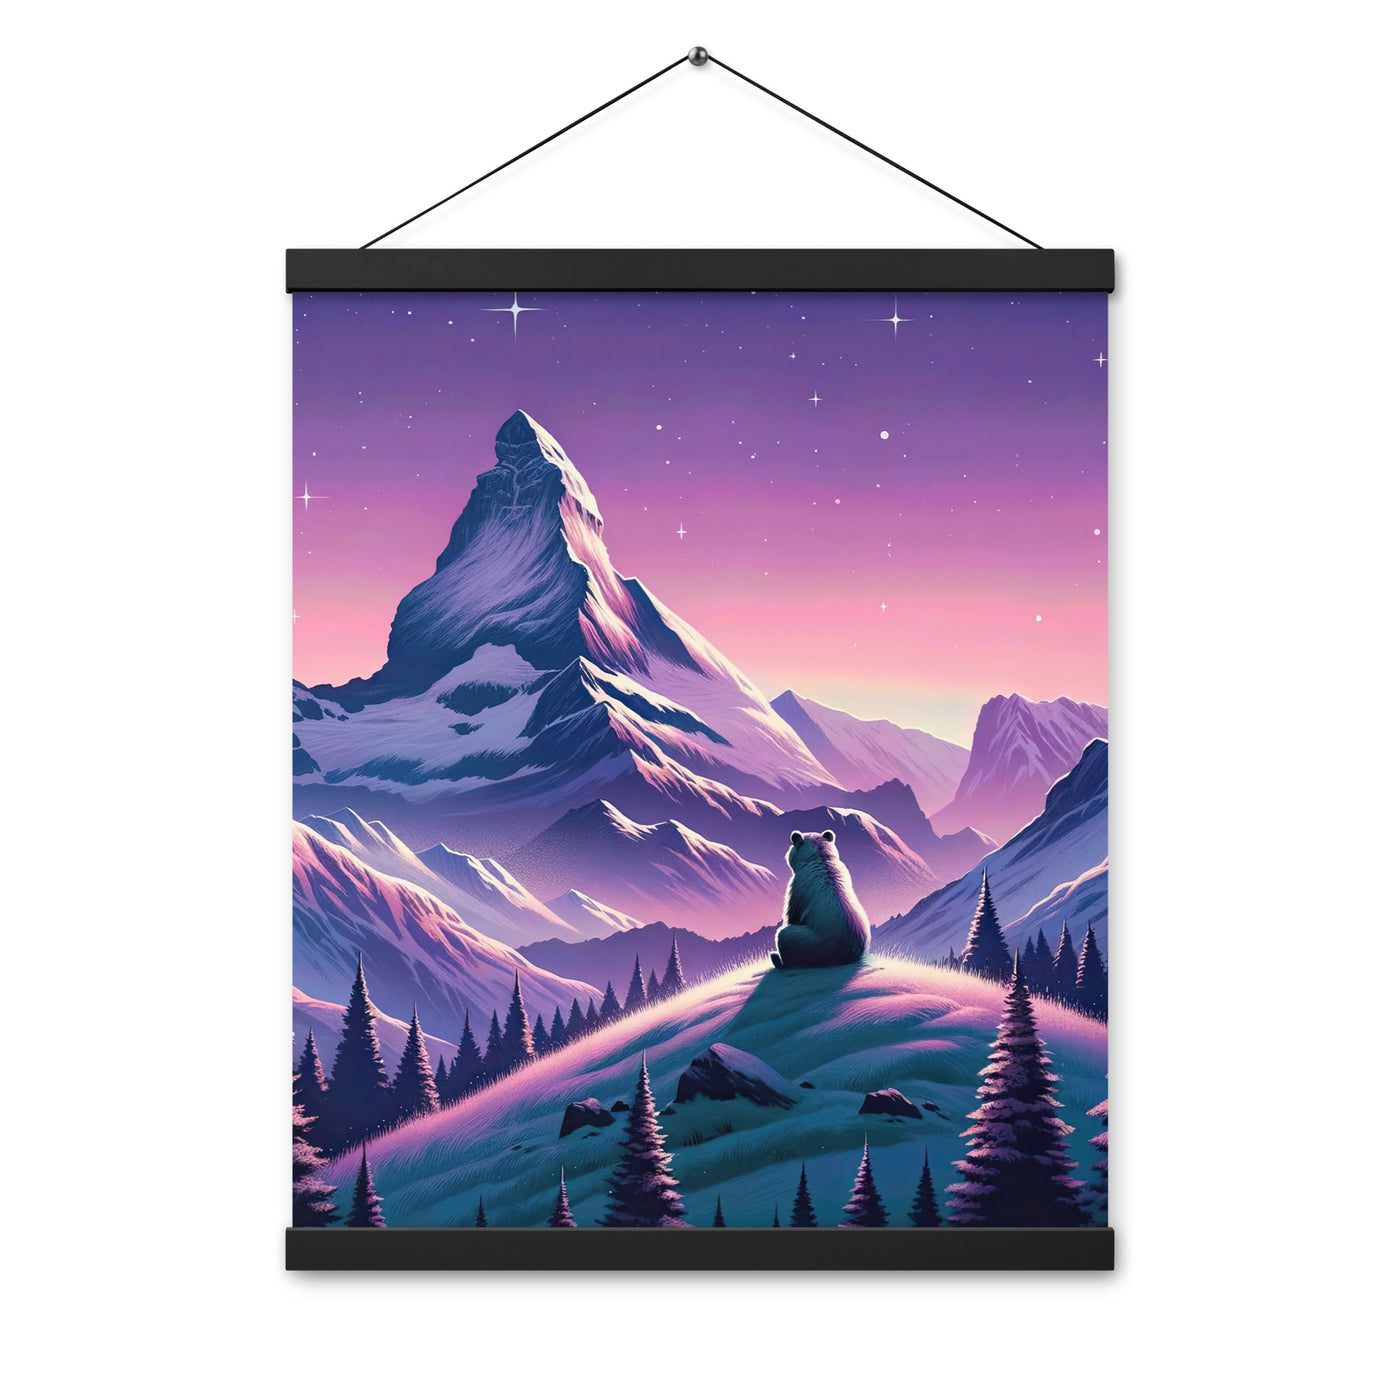 Bezaubernder Alpenabend mit Bär, lavendel-rosafarbener Himmel (AN) - Premium Poster mit Aufhängung xxx yyy zzz 40.6 x 50.8 cm